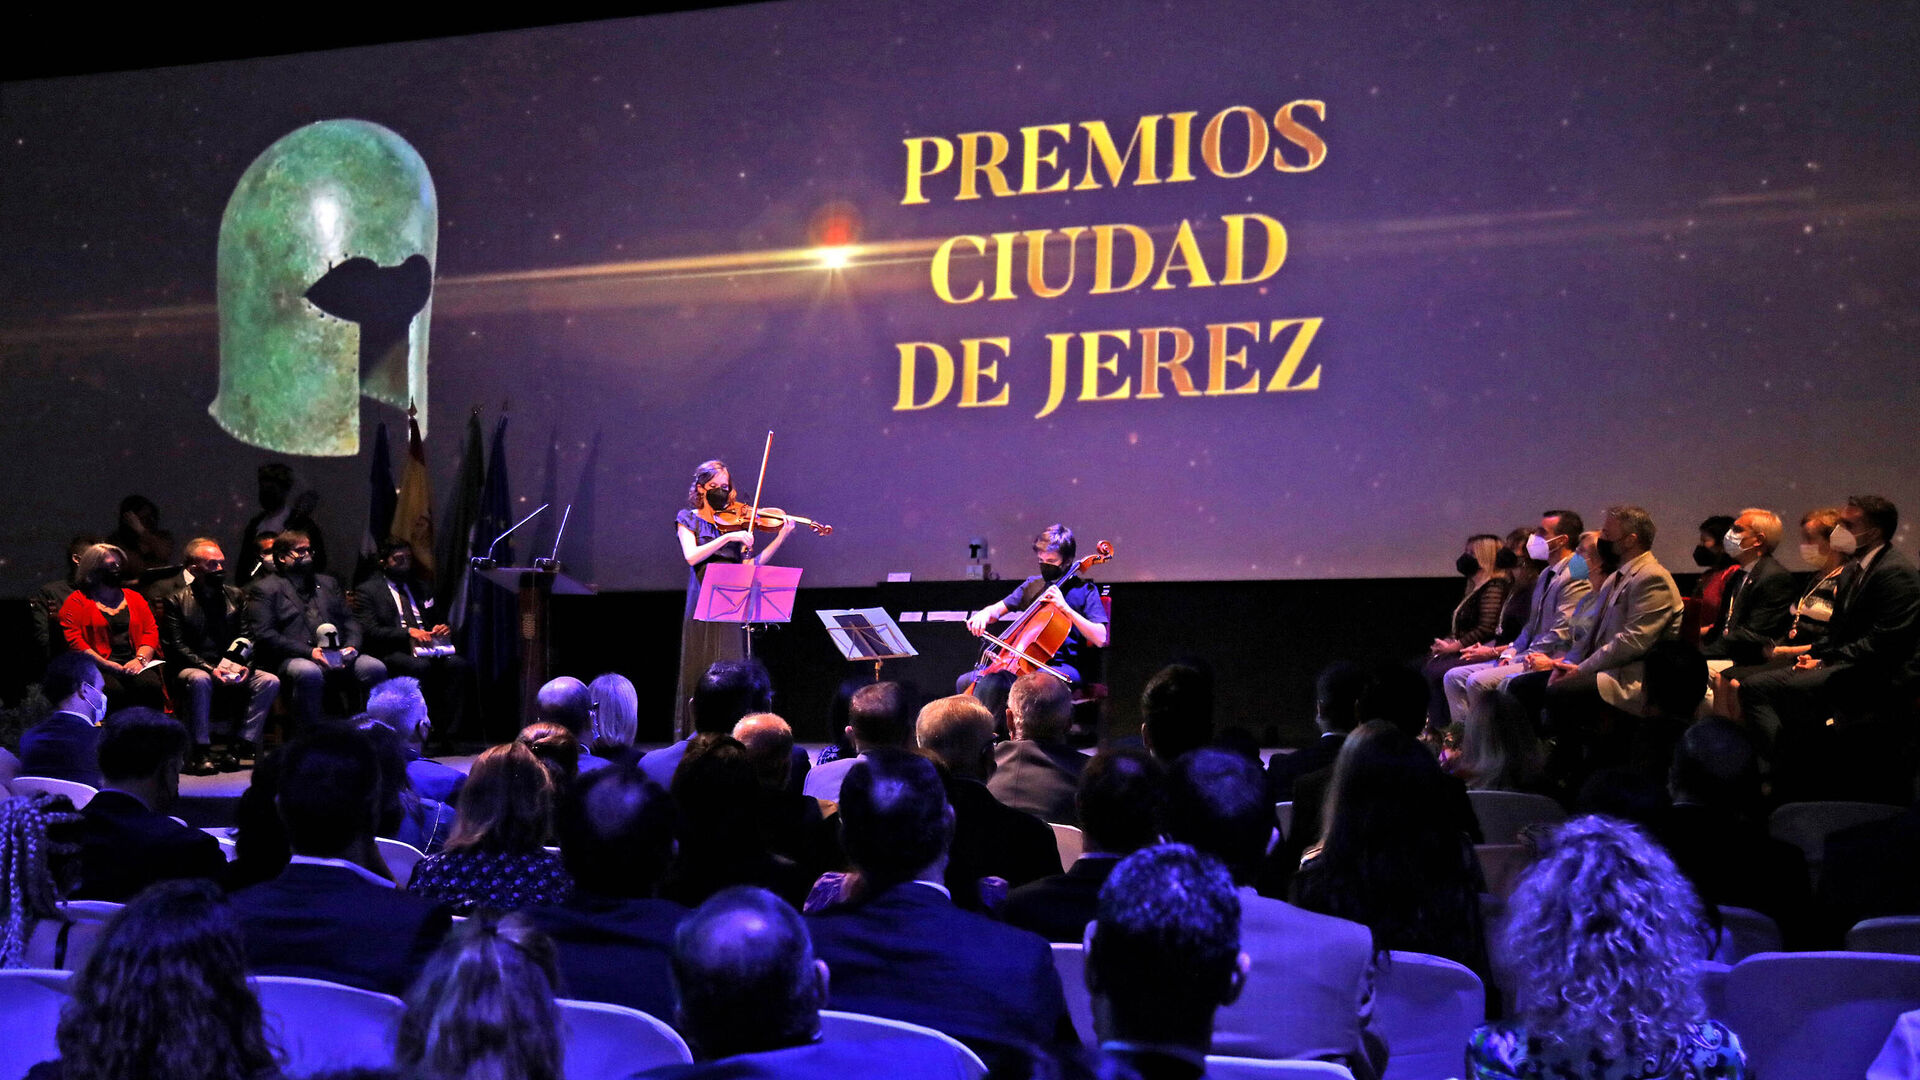 Premios Ciudad de Jerez 2021